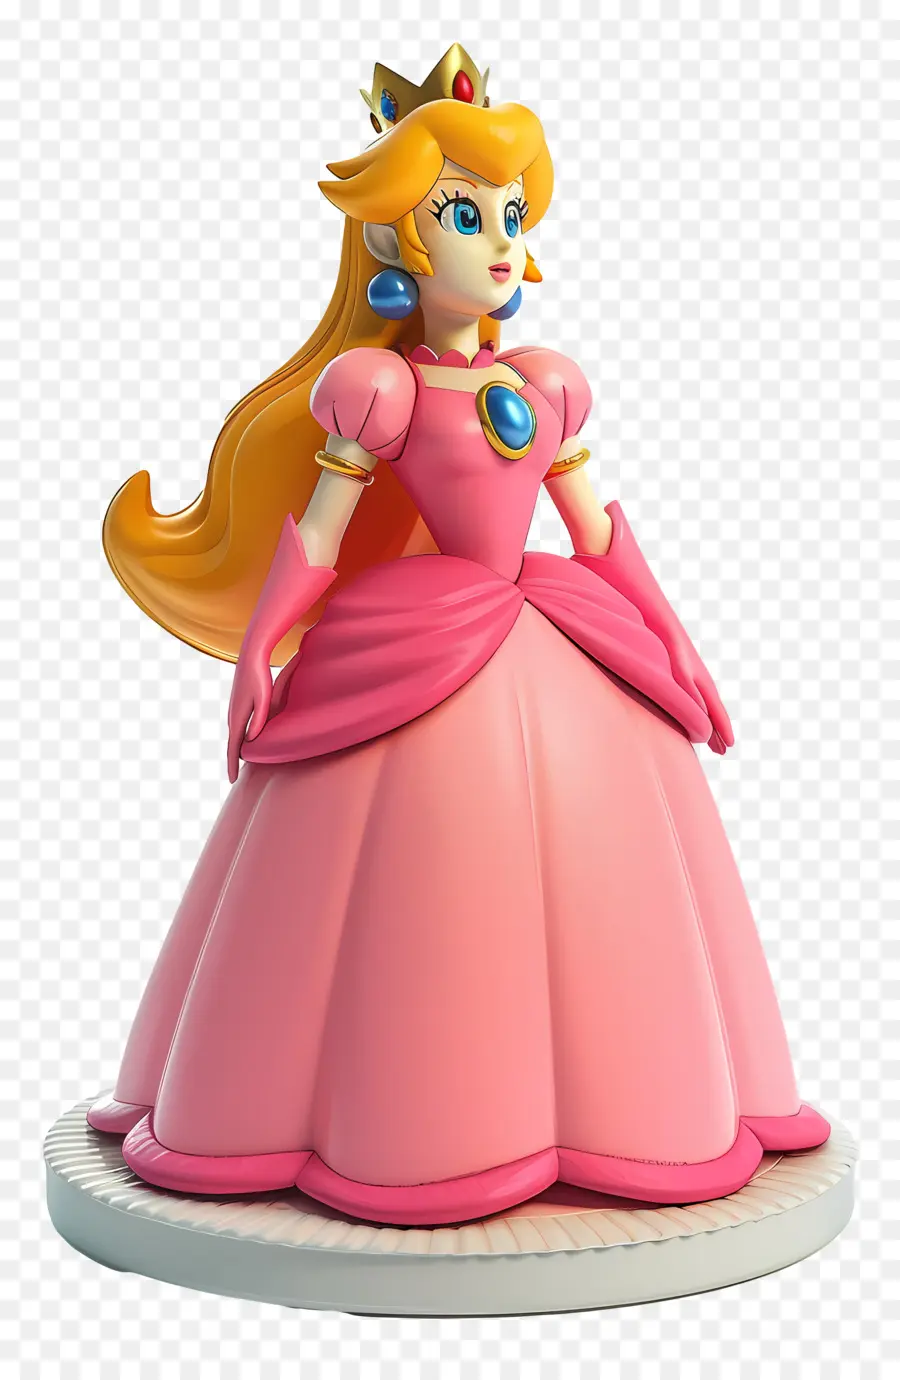 principessa pesca - Statua della Principessa Disney Peach in rosa